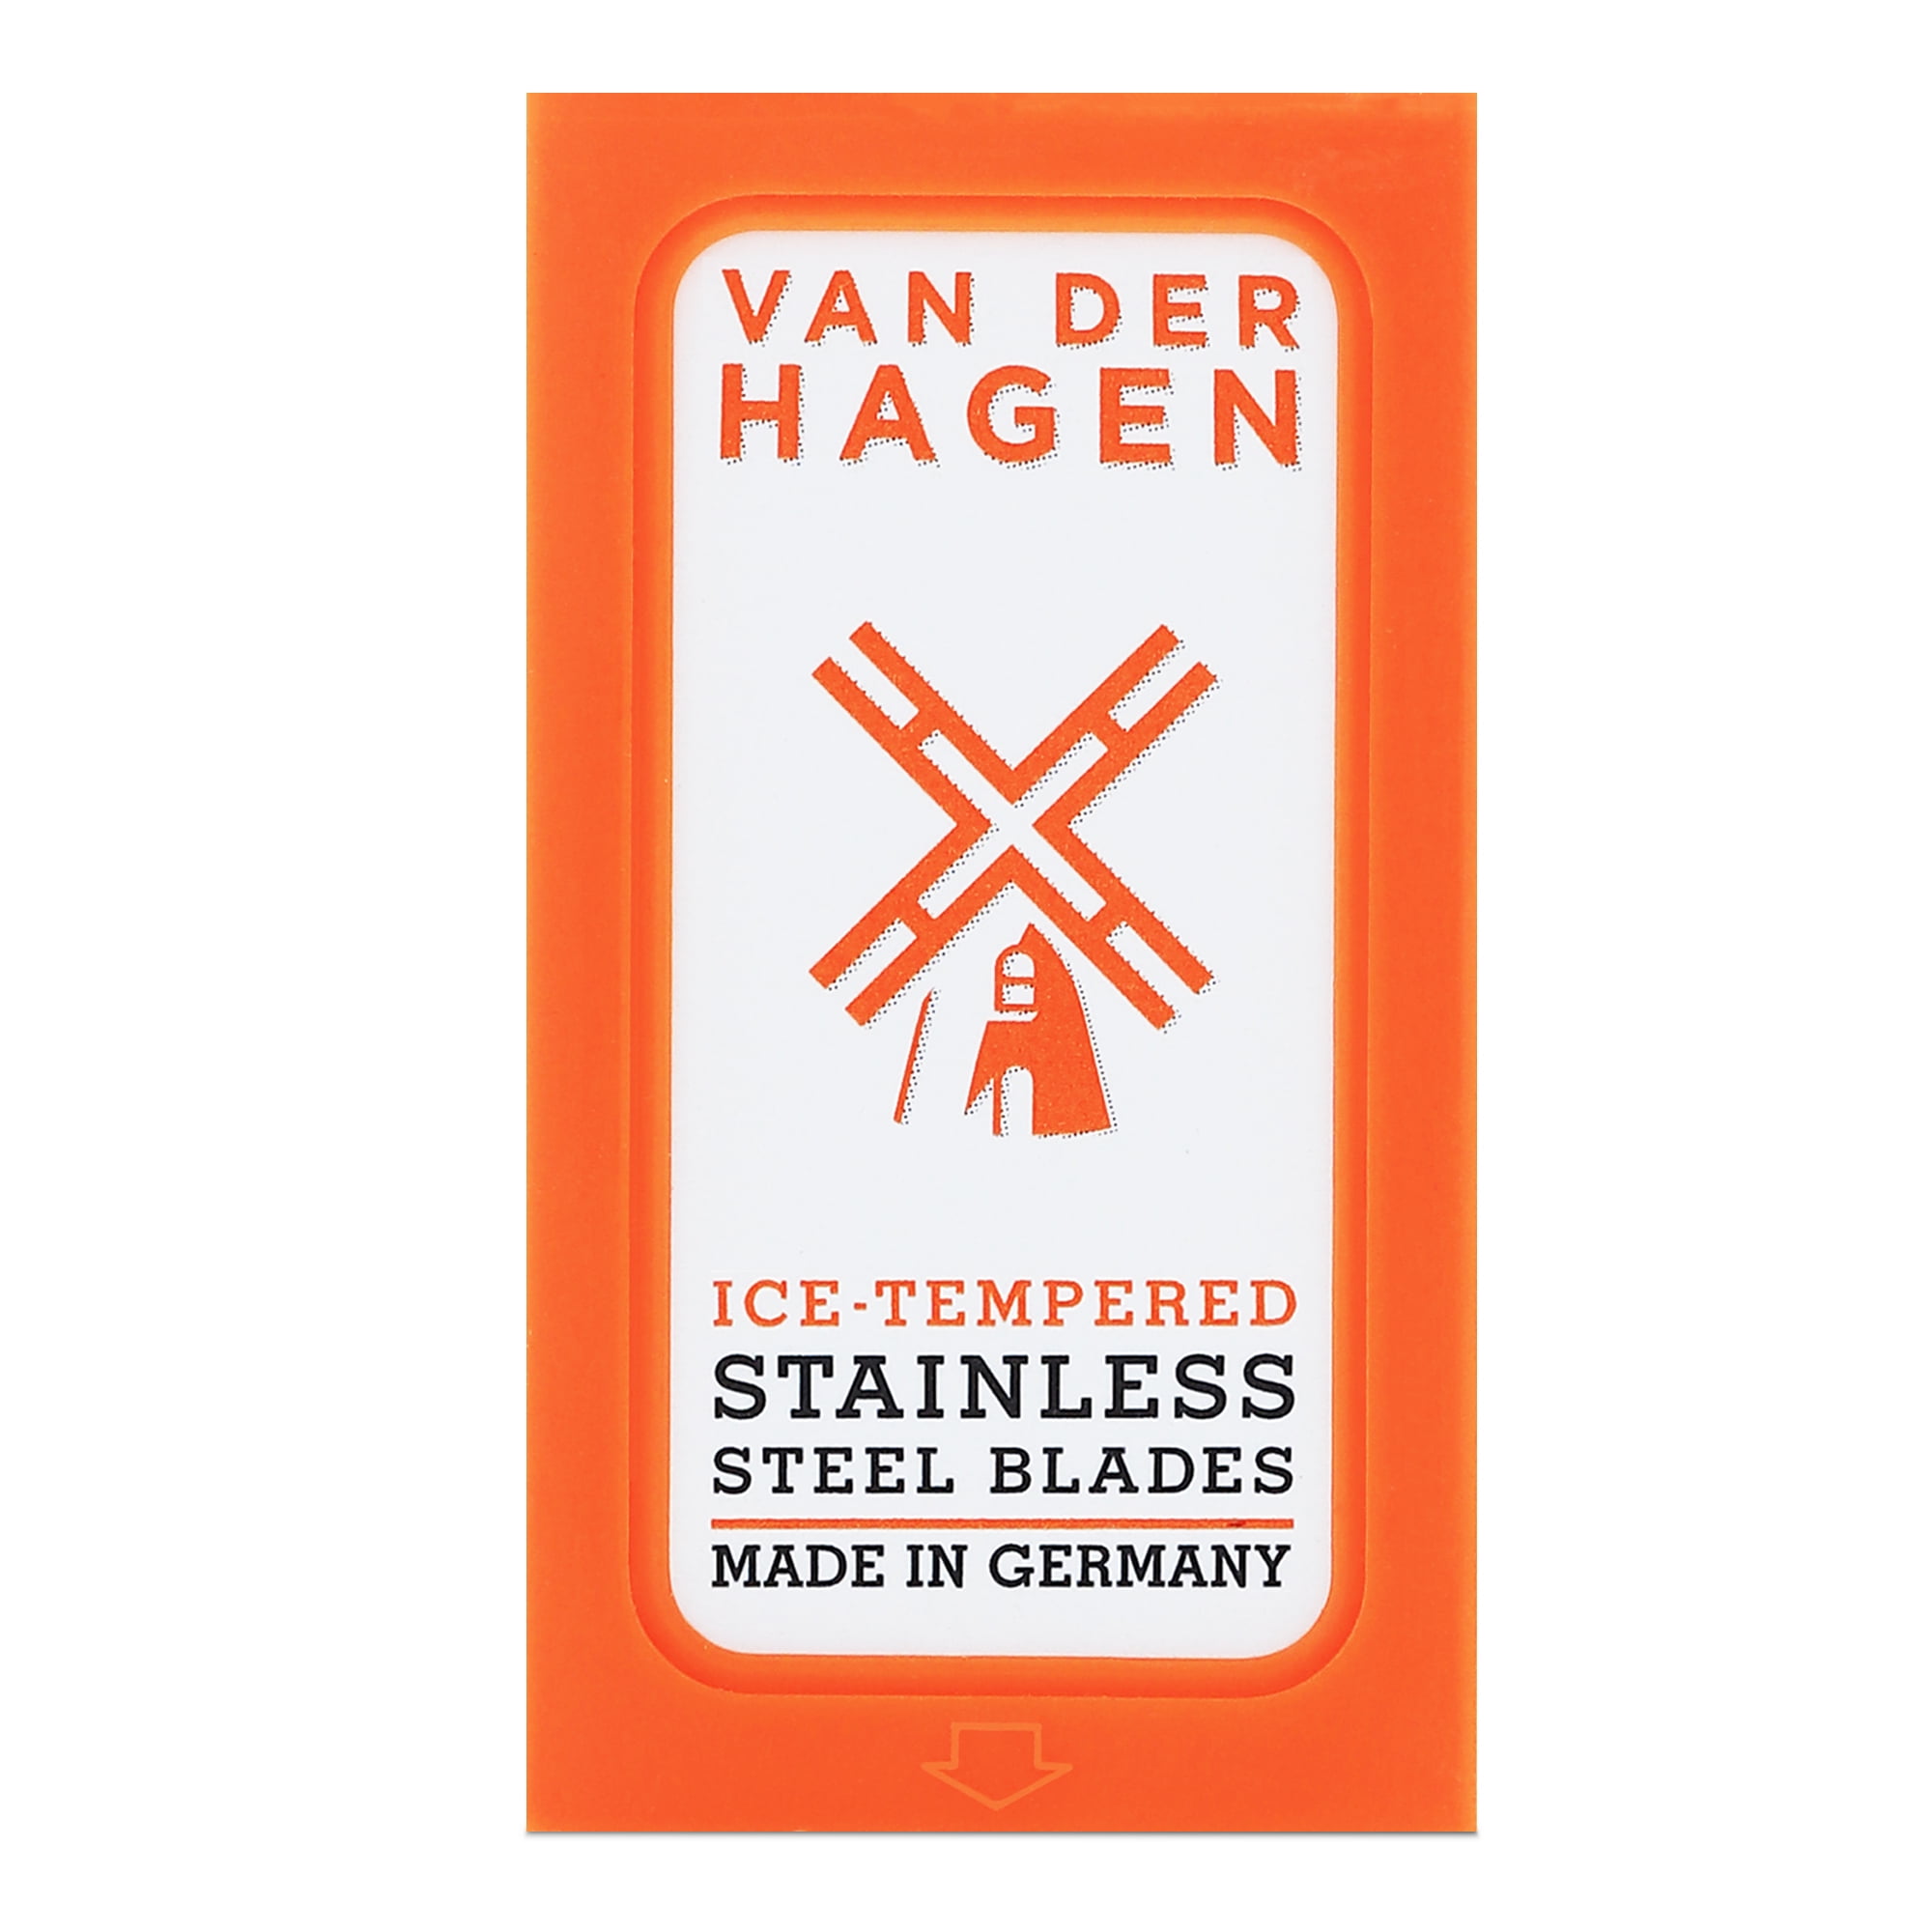 VAN DER HAGEN Ice Tempered Stainless Steel Razor Blades (5 Blades)